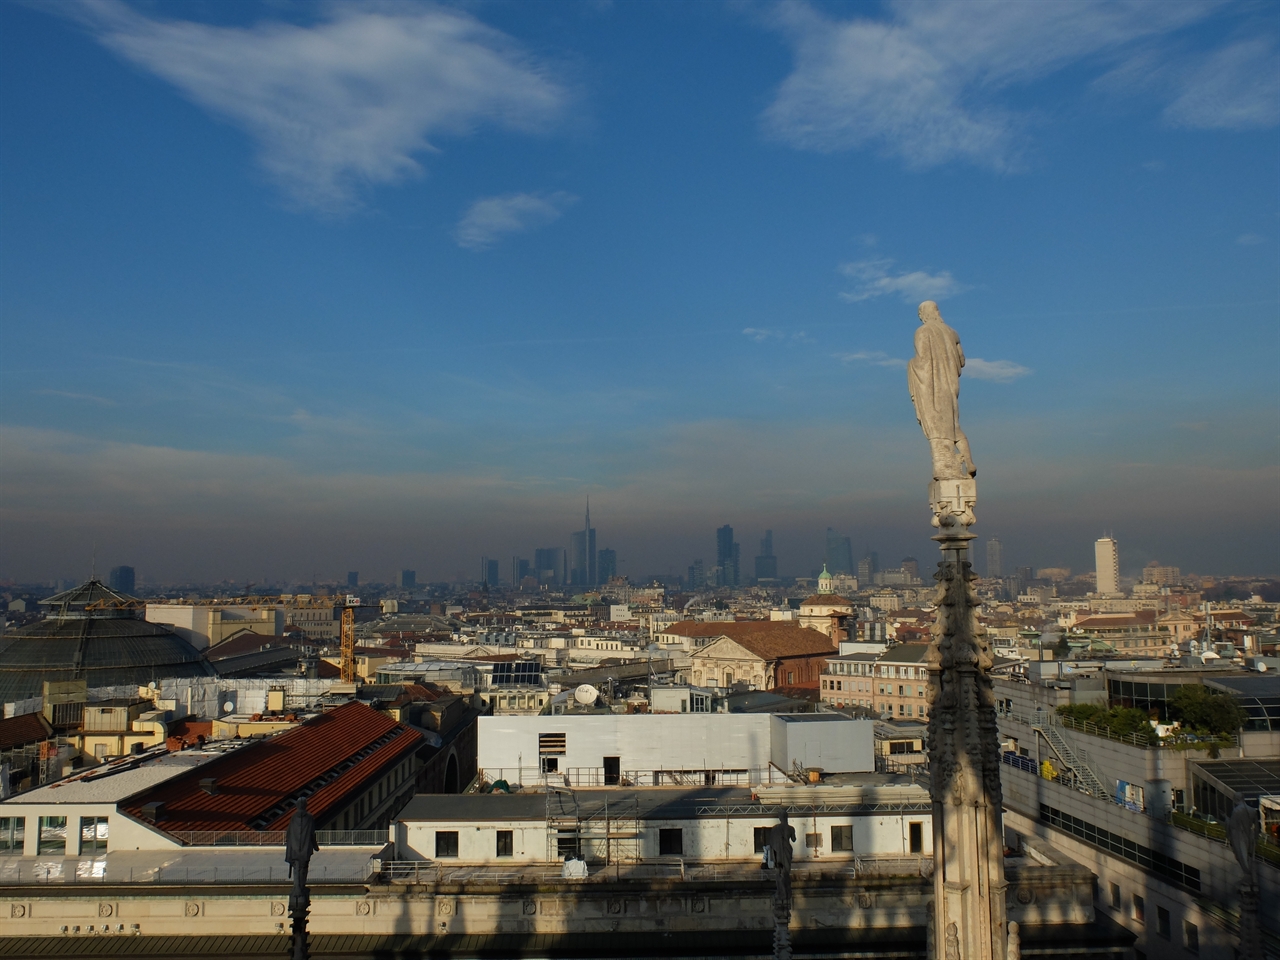 밀라노의 '두오모' 첨탑 위의 성인. 이 거대한 ‘두오모’의 작은 한 부분을 장식하는 것만으로 자신의 삶과 피땀을 바쳐야 했을 이름없는 석공에 대한 최소한의 예의를 생각해 보게 합니다.  